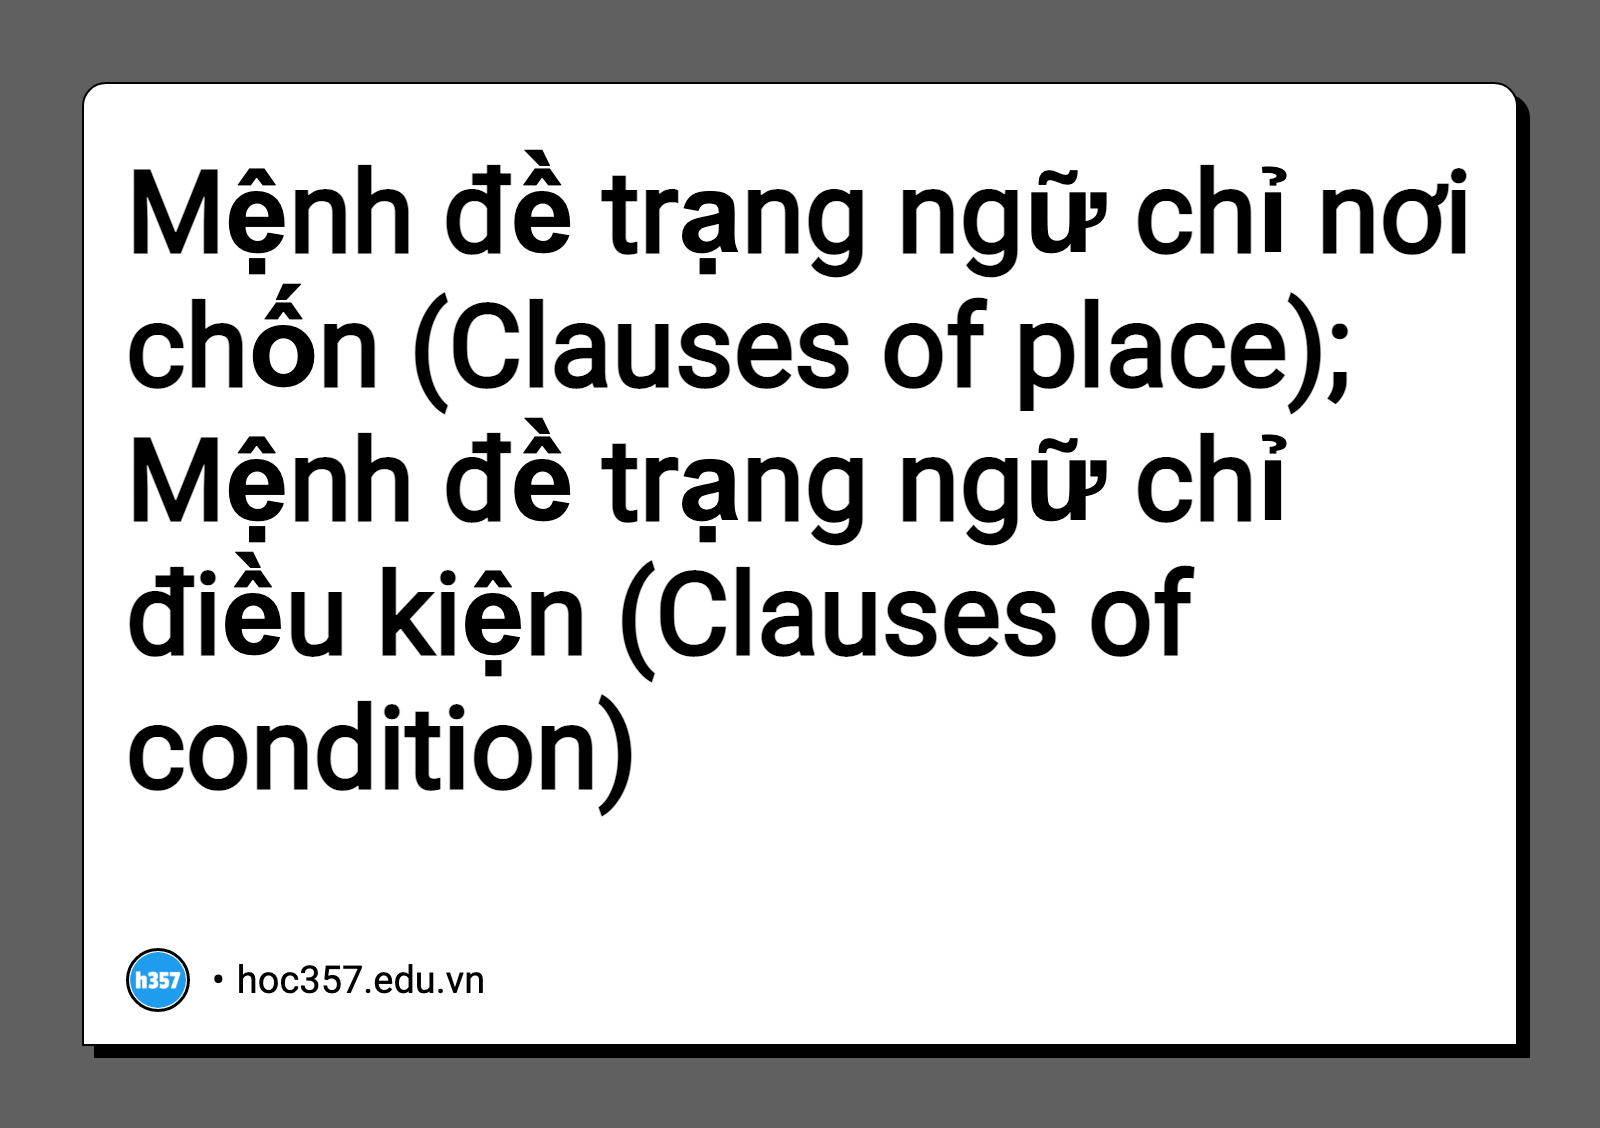 Hình minh họa Mệnh đề trạng ngữ chỉ nơi chốn (Clauses of place); Mệnh đề trạng ngữ chỉ điều kiện (Clauses of condition)